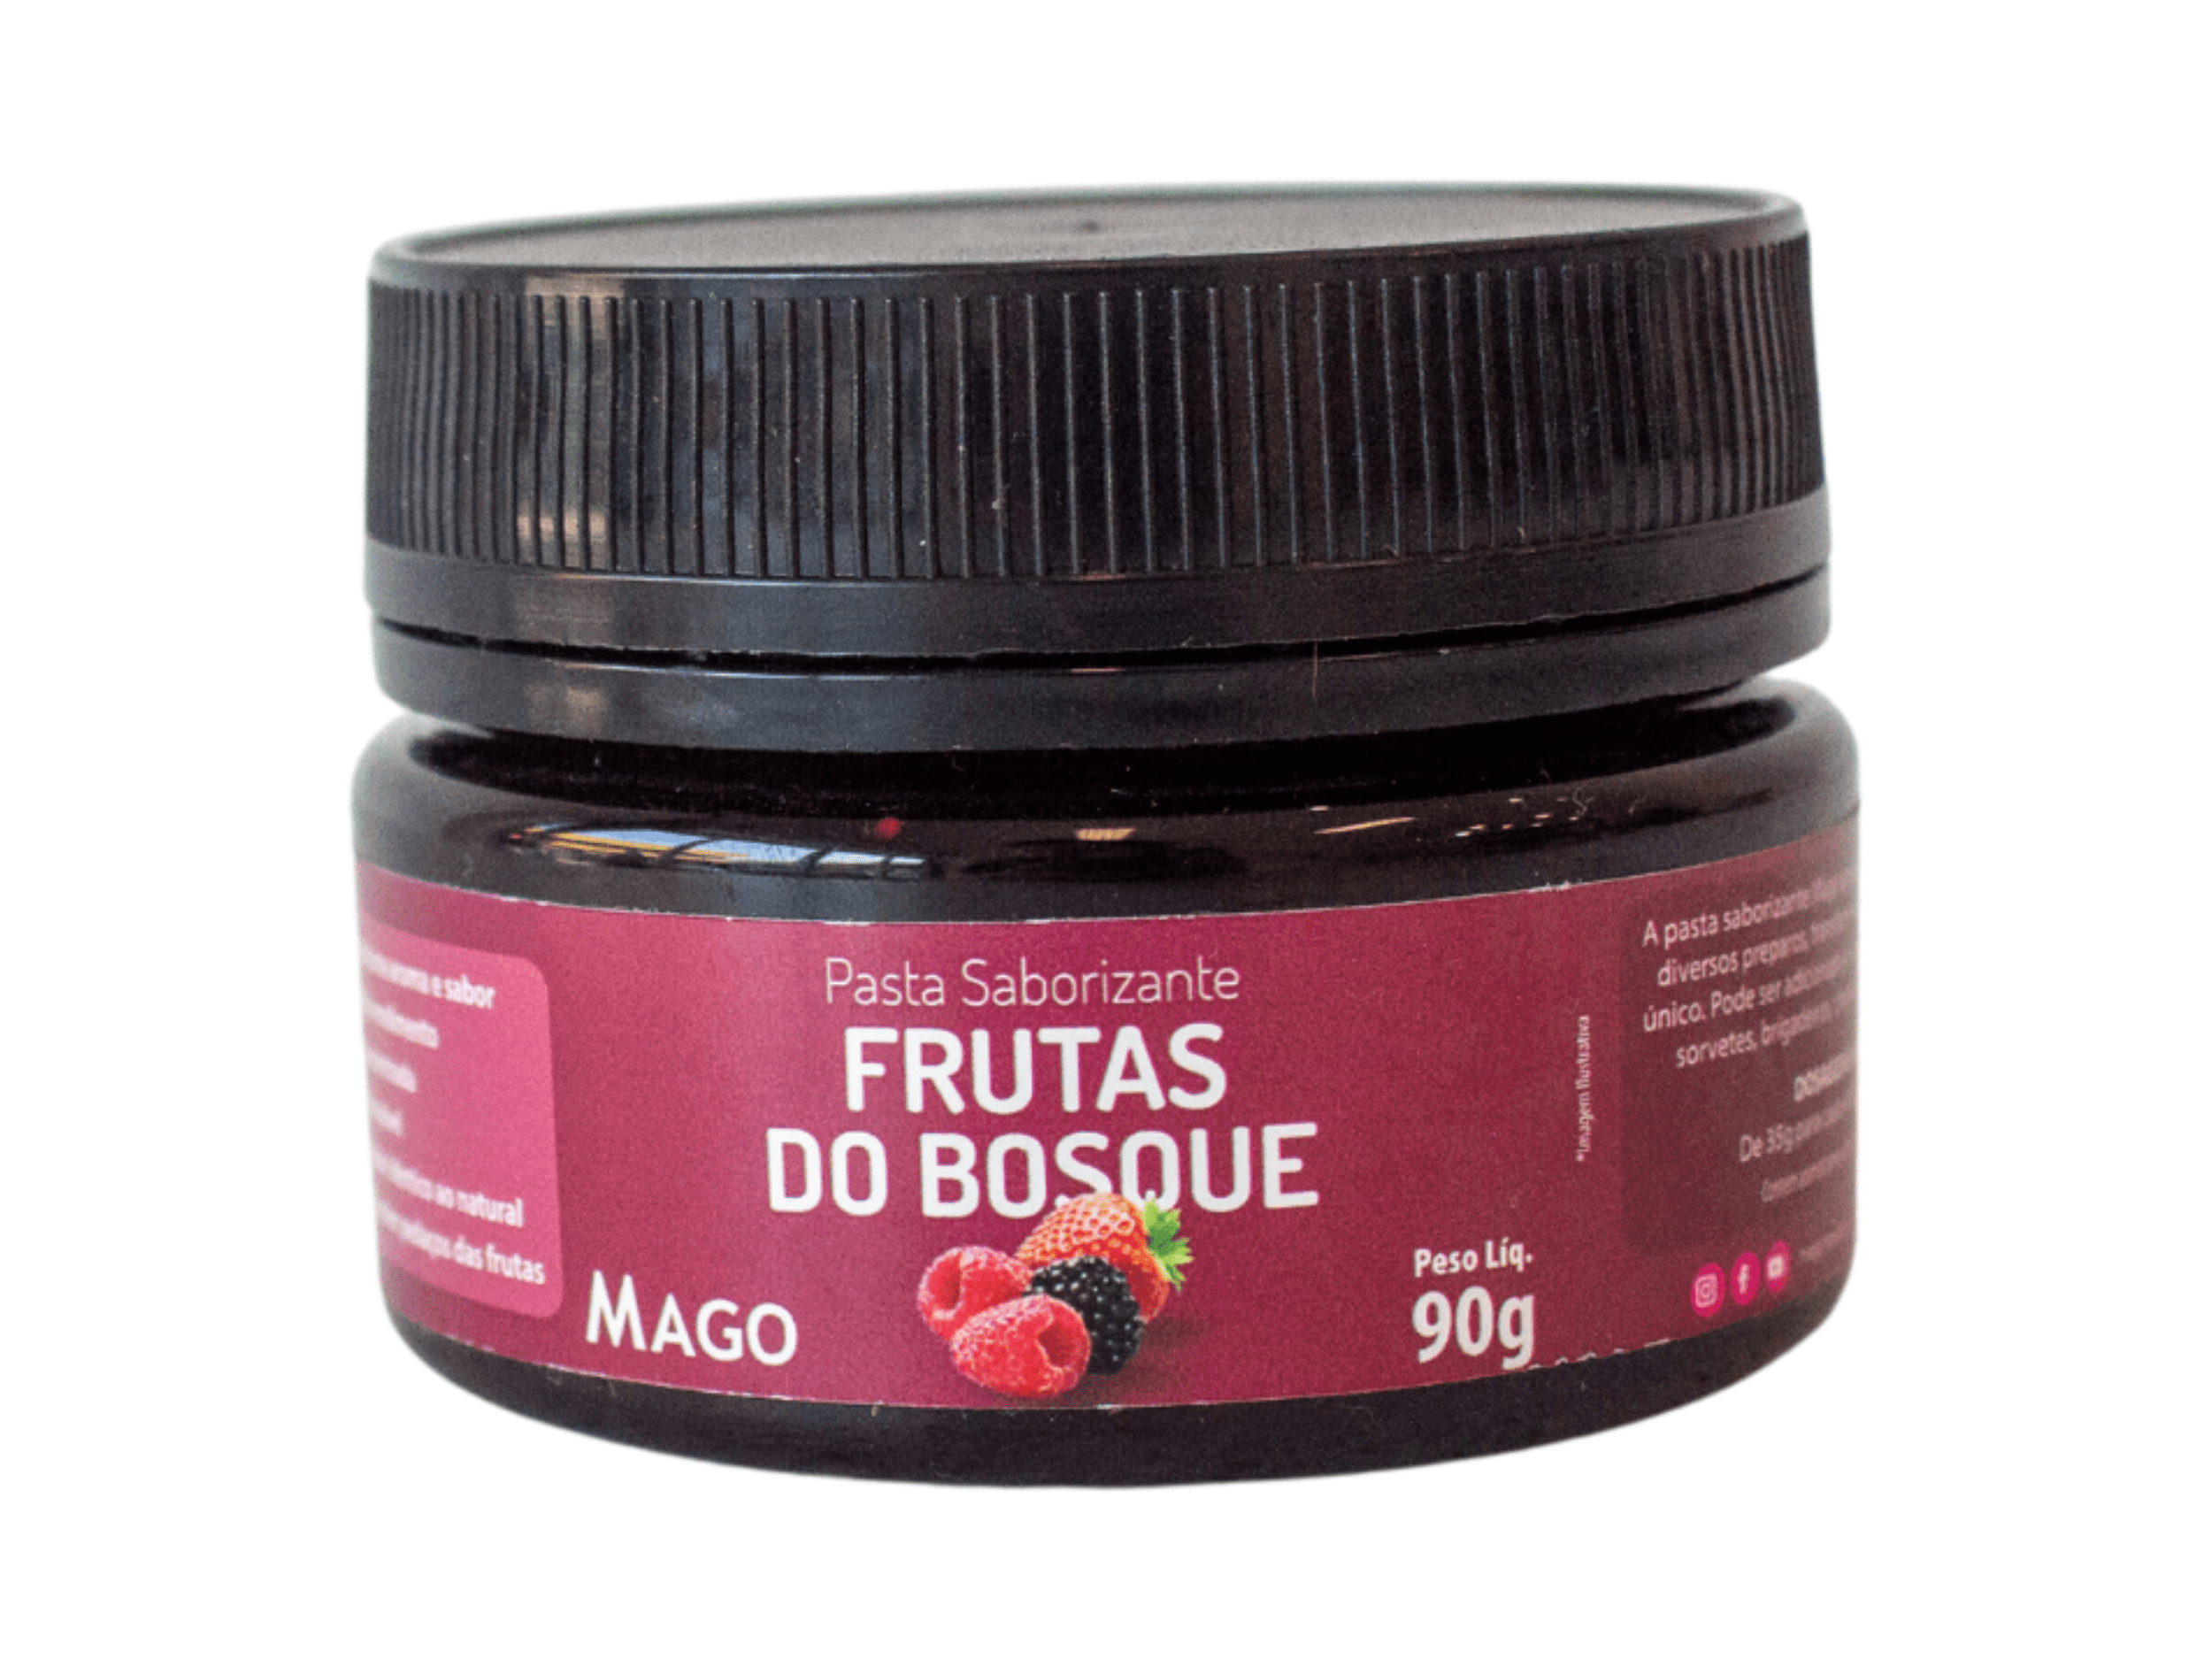 Pasta Saborizante Frutas do Bosque 90g - Mago